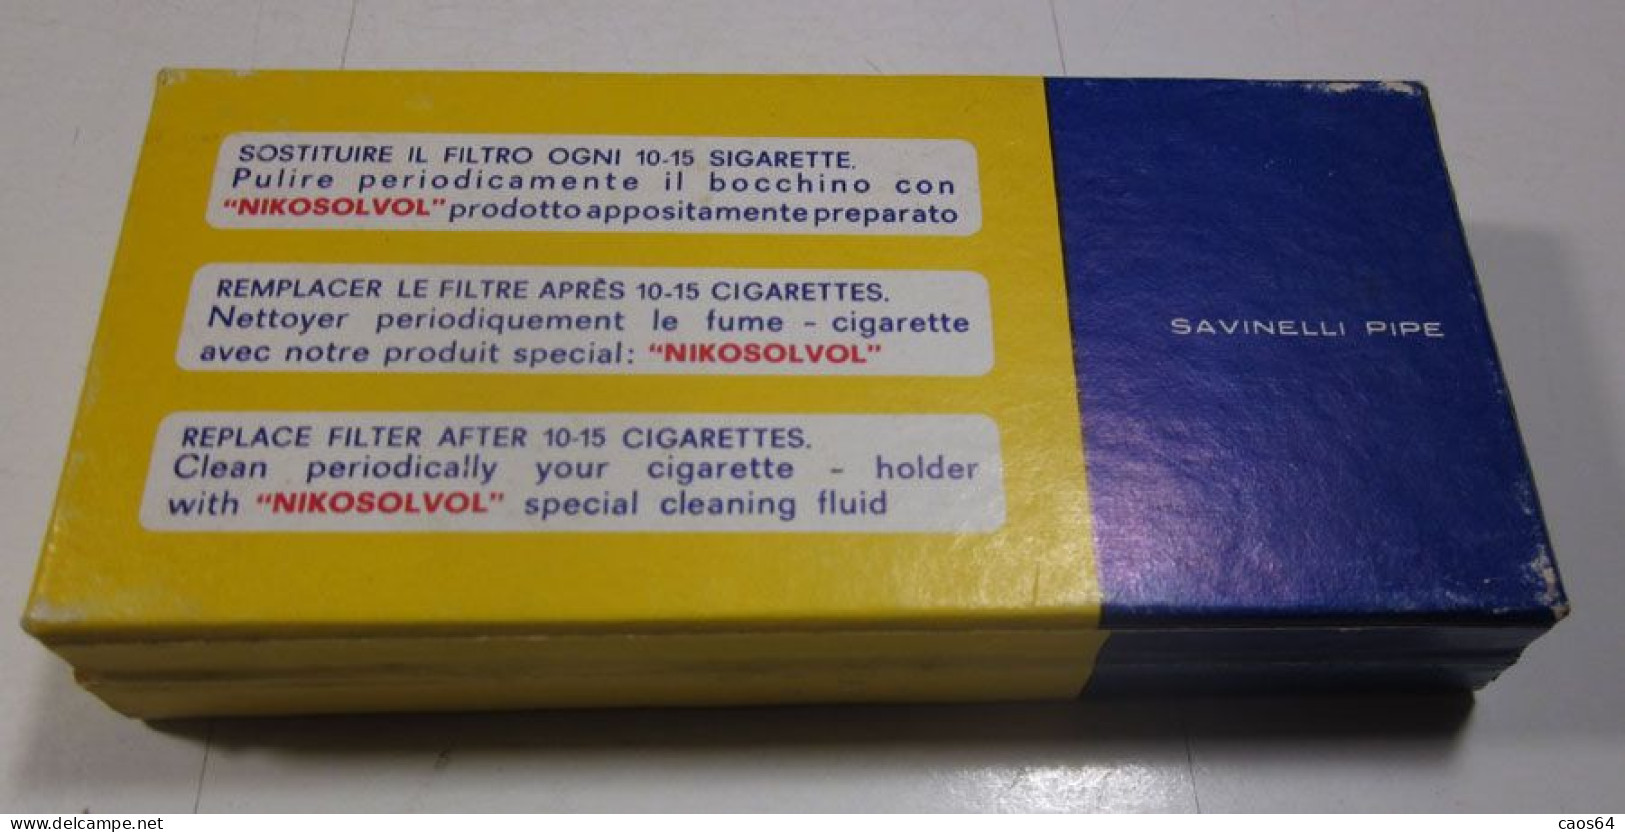 NO - NIK Filtri Filtres Filters Savinelli Pipe Italy Con Bocchino Vintage - Fume-Cigarettes